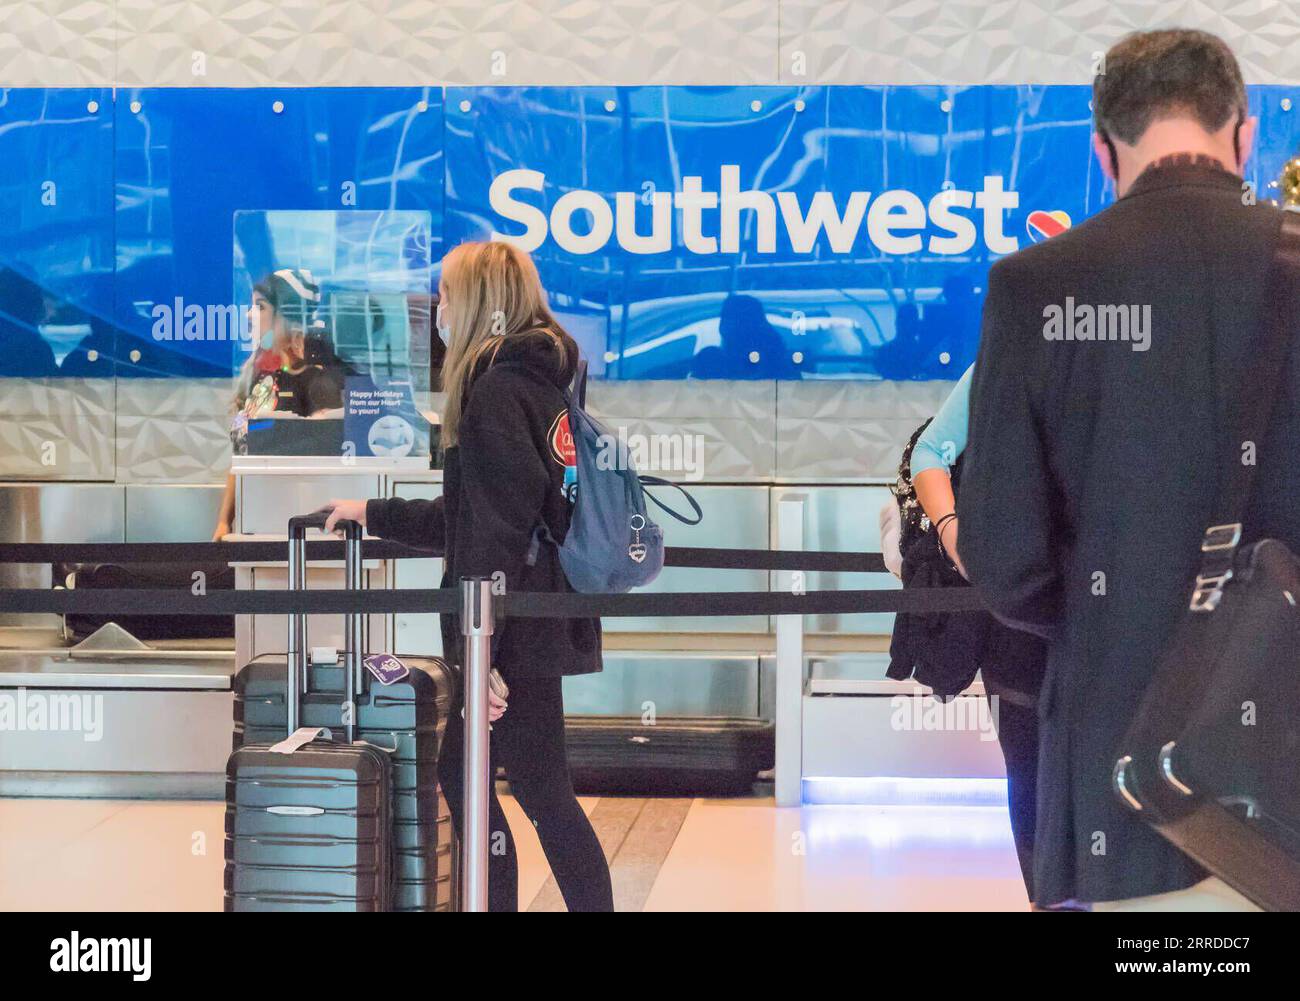 211218 -- DALLAS, 18. Dezember 2021 -- Reisende warten am Check-in Schalter von Southwest Airlines am Dallas Love Field Airport in Dallas, Texas, USA, 17. Dezember 2021. Gary Kelly, CEO von Southwest Airlines, hat sich positiv auf COVID-19 getestet, sagte das Unternehmen mit Hauptsitz in Dallas im US-Bundesstaat Texas am Freitag, zwei Tage nach seiner Teilnahme an einer Anhörung im US-Senat zusammen mit einigen anderen US-amerikanischen Leitern und Gesetzgebern. Foto von /Xinhua U.S.-TEXAS-DALLAS-SOUTHWEST AIRLINES-CEO-COVID-19-POSITIVE GuangmingxLi PUBLICATIONxNOTxINxCHN Stockfoto